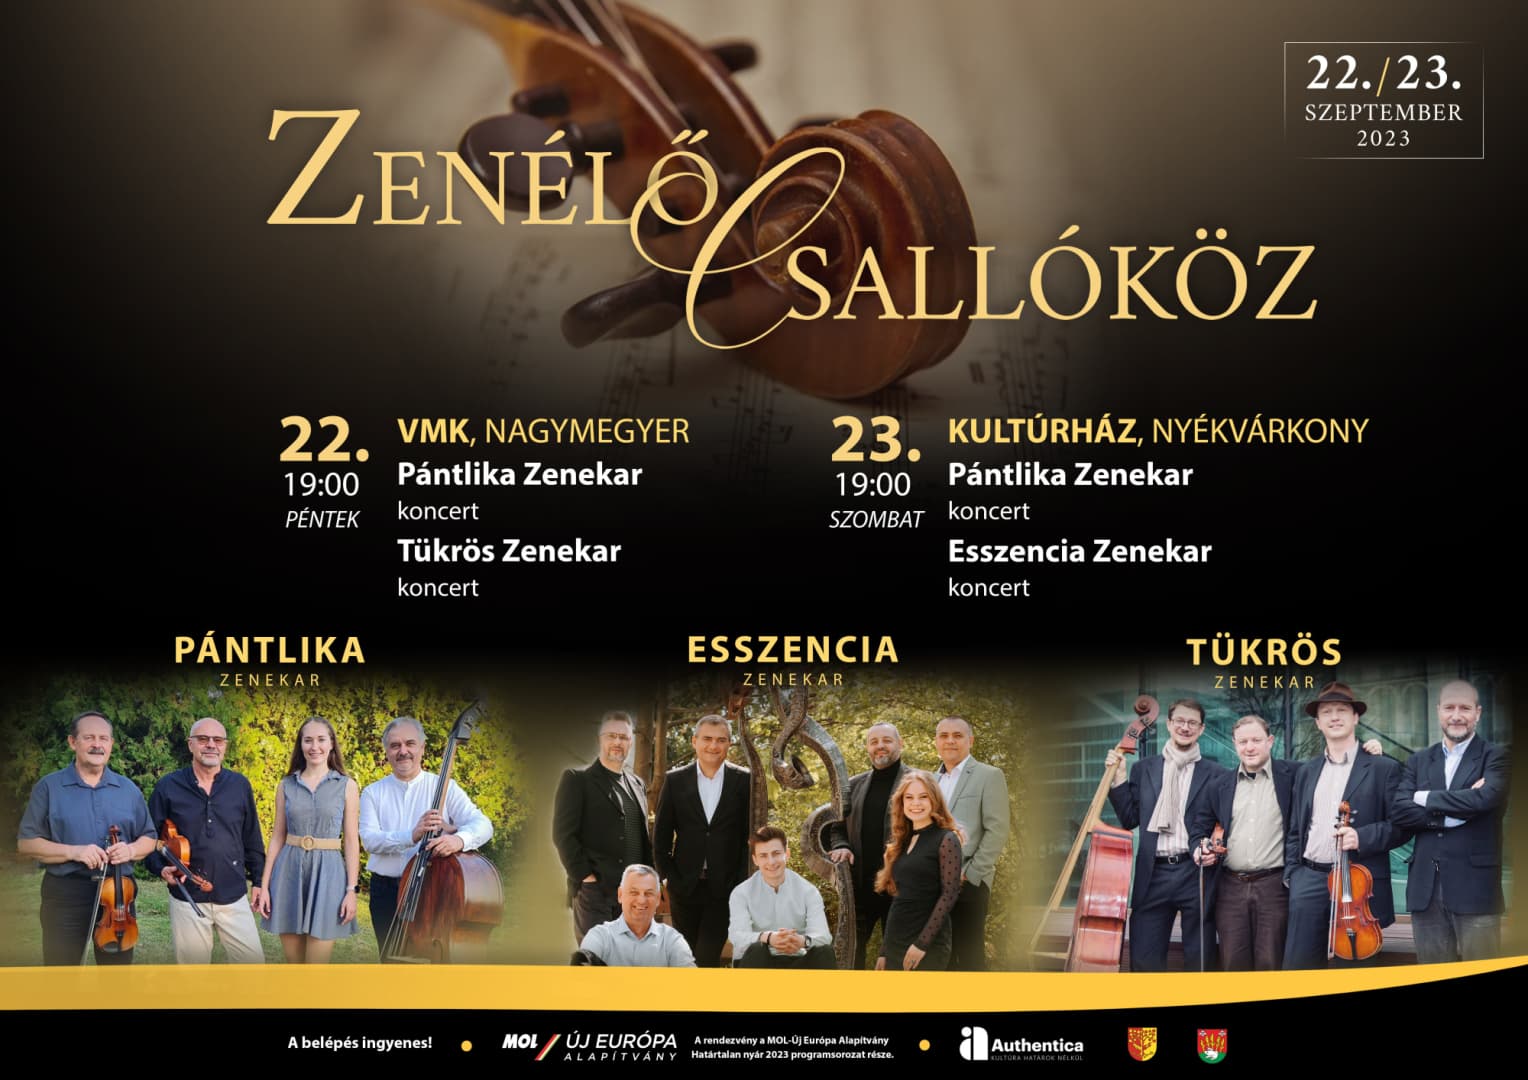 Most hétvégén Zenélő Csallóköz - Pántlika, Tükrös és Esszencia koncertek Nagymegyeren és Nyékvárkonyban!